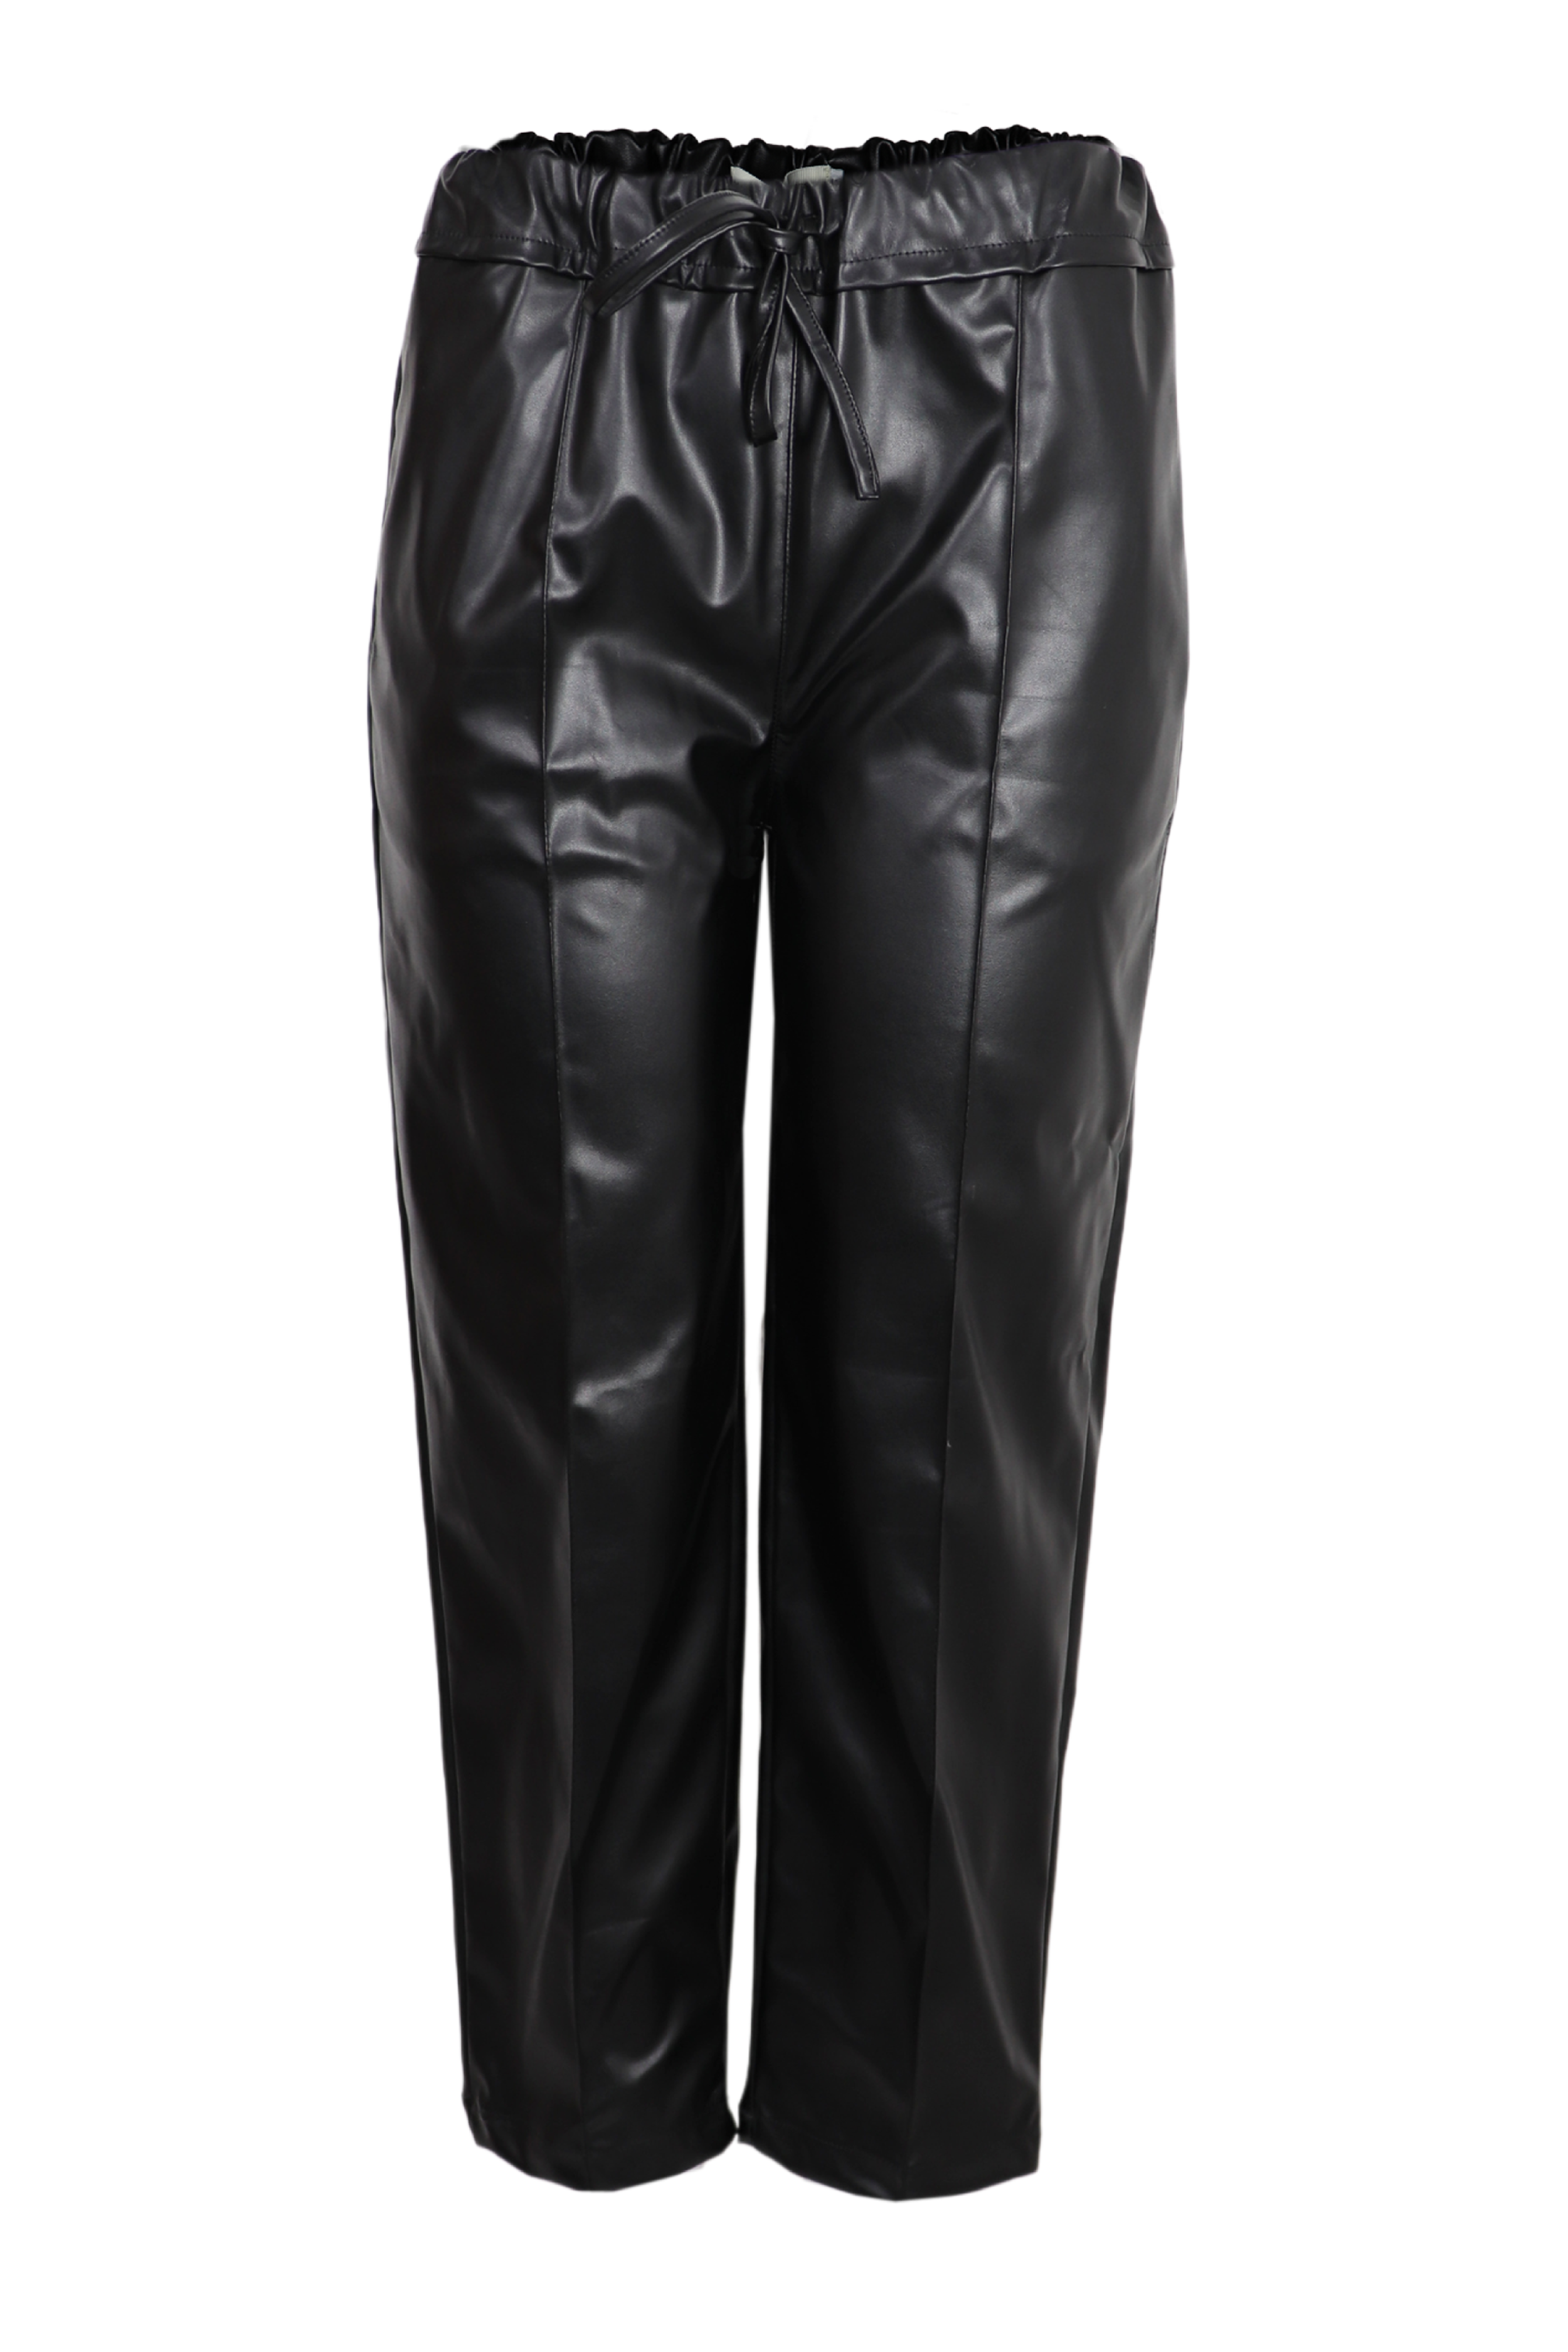 Hermoso pantalón metalizado con resorte en la cintura de color negro